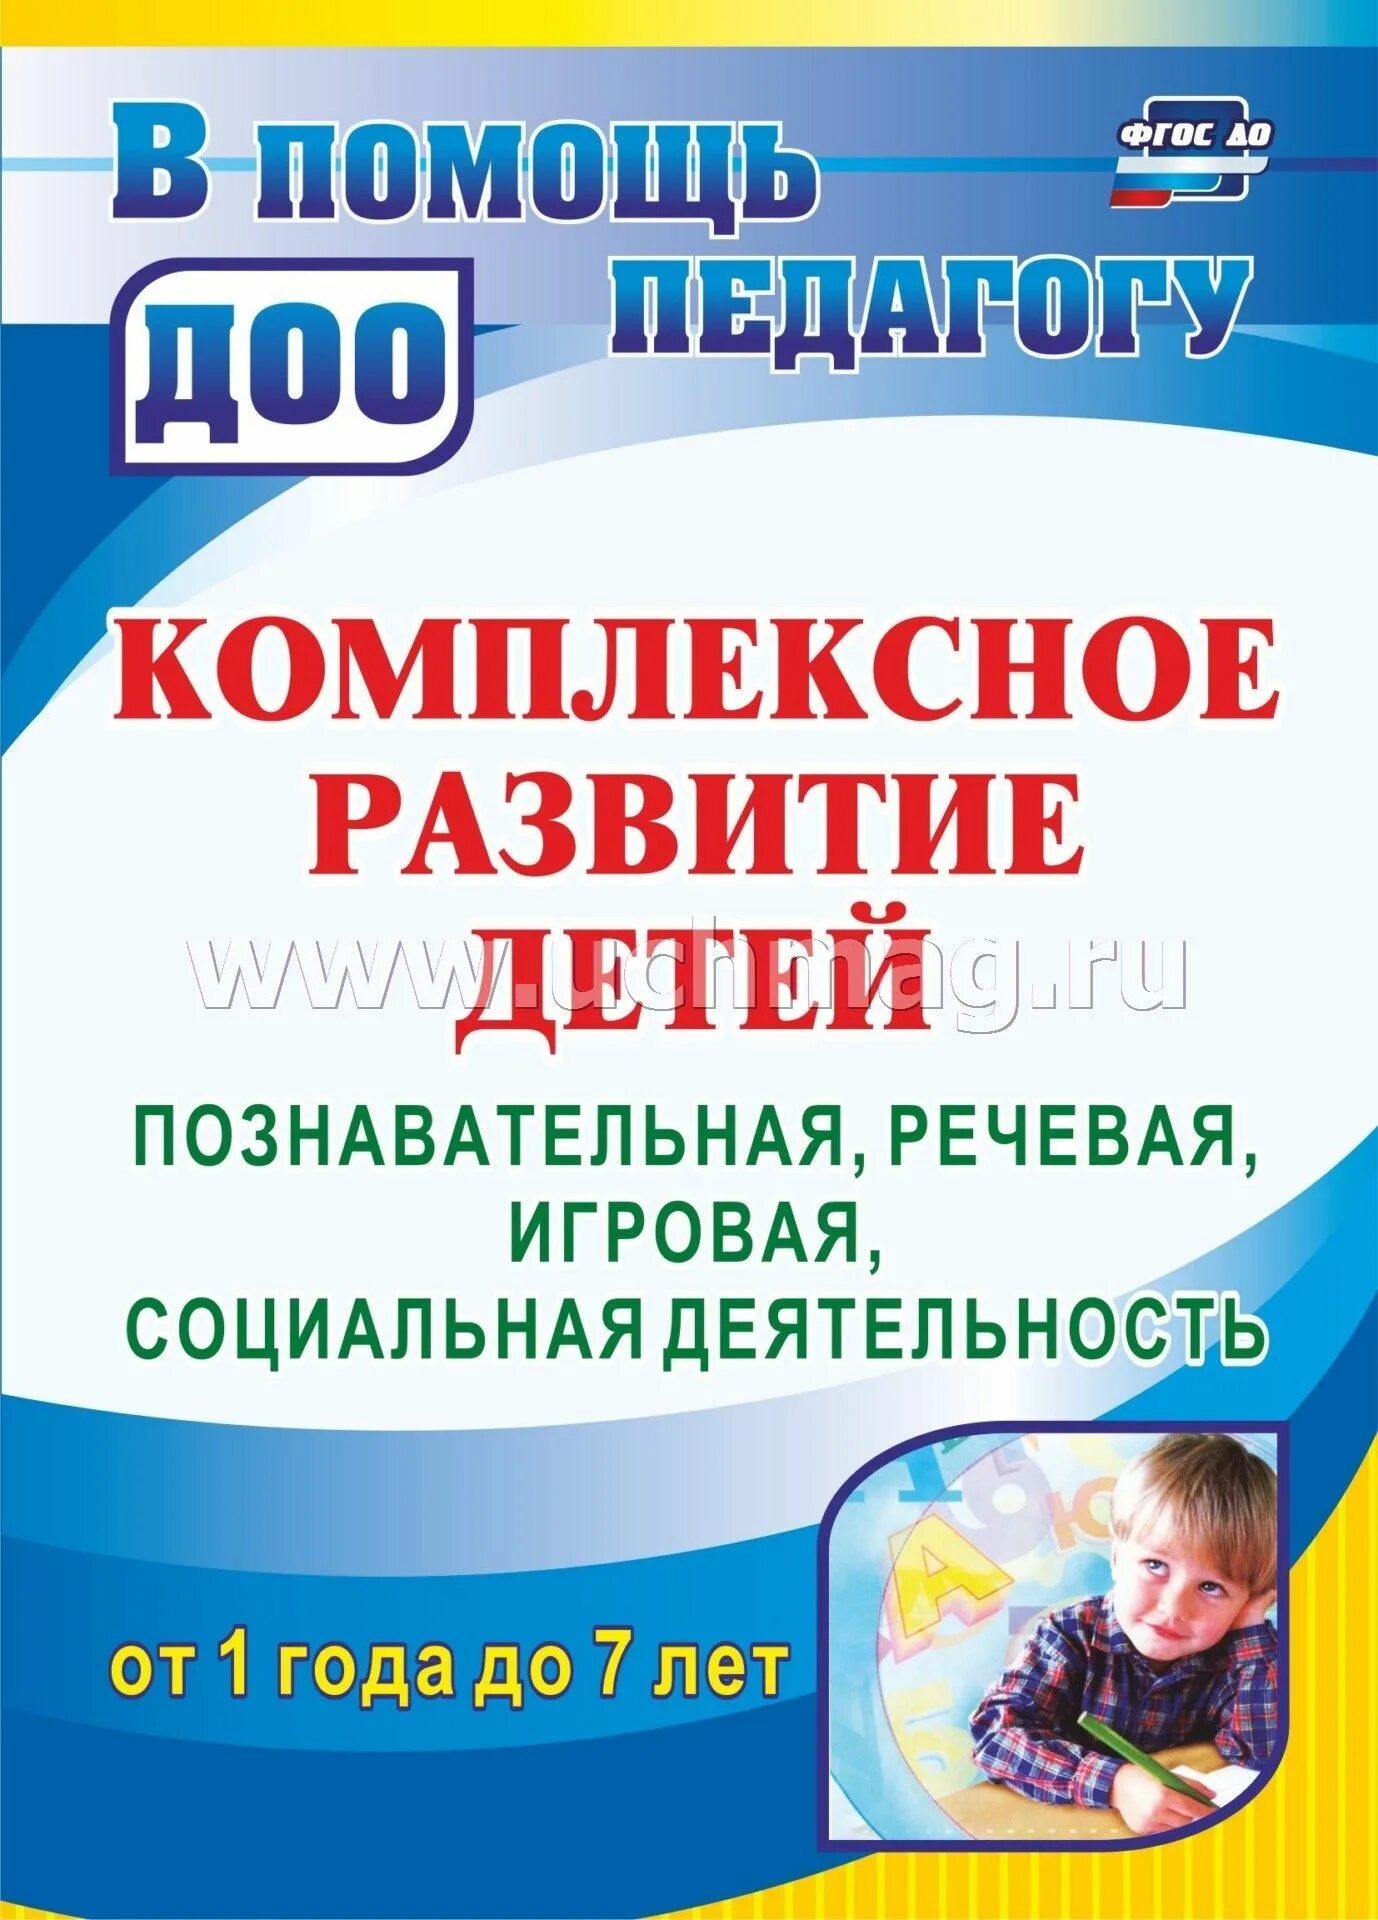 Комплексное развитие детей. Комплексное развитие. Книга по развитию ребенка от 1 года до 7 лет. Книги по развитию детей Россия.